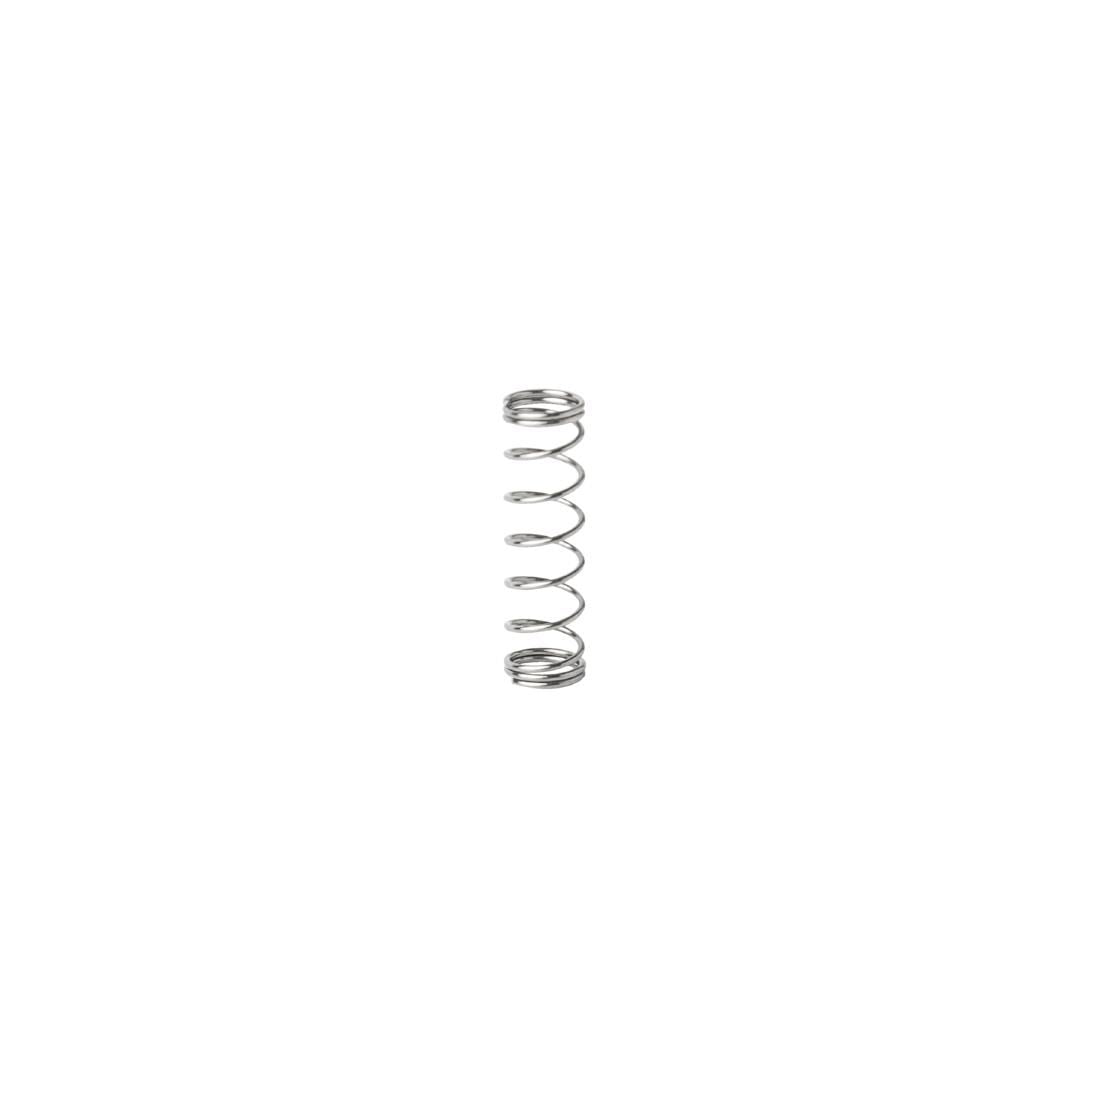 AG585 Waring Interlock Switch Pin Spring